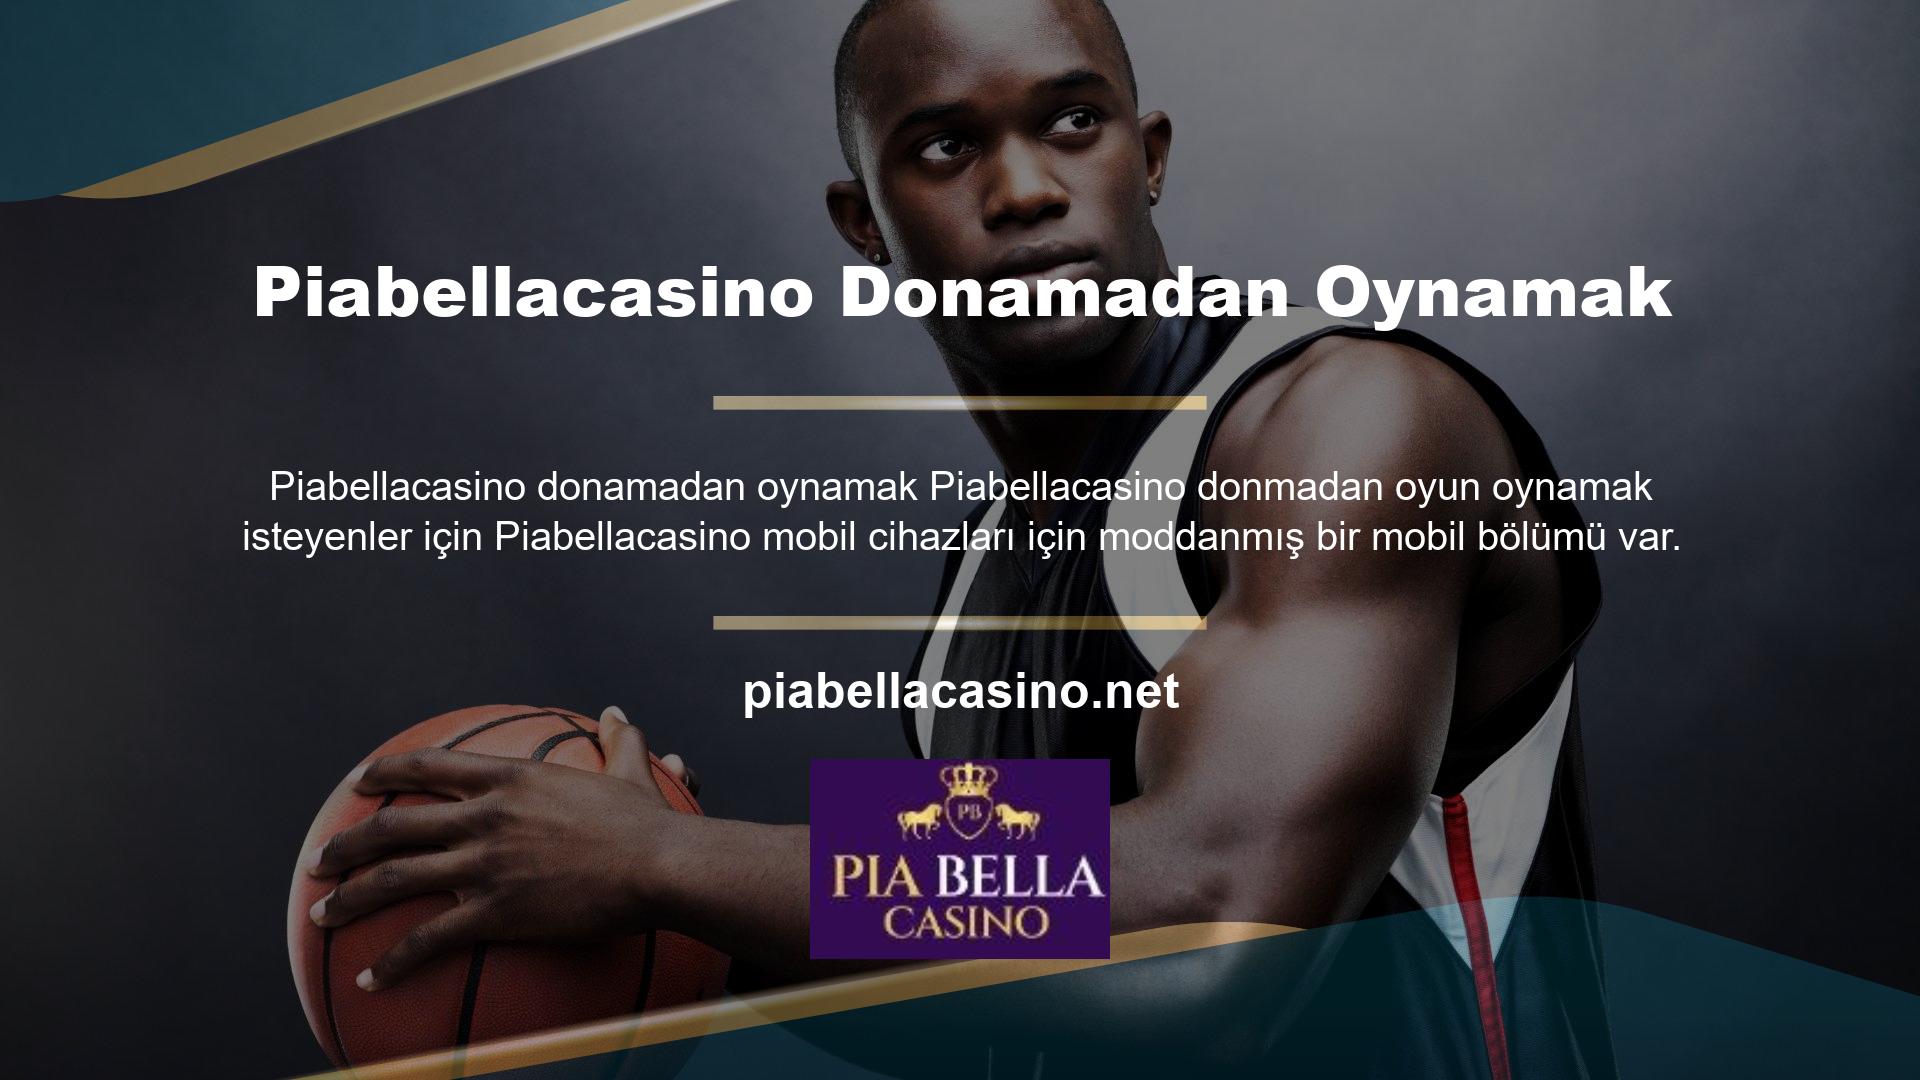 Piabellacasino premium hizmetlerinden yararlanmak ve ödüller kazanmak için üyelik oluşturun! Tüm canlı casino oyunlarından oluşan geniş bir koleksiyon sunan Piabellacasino göz atın